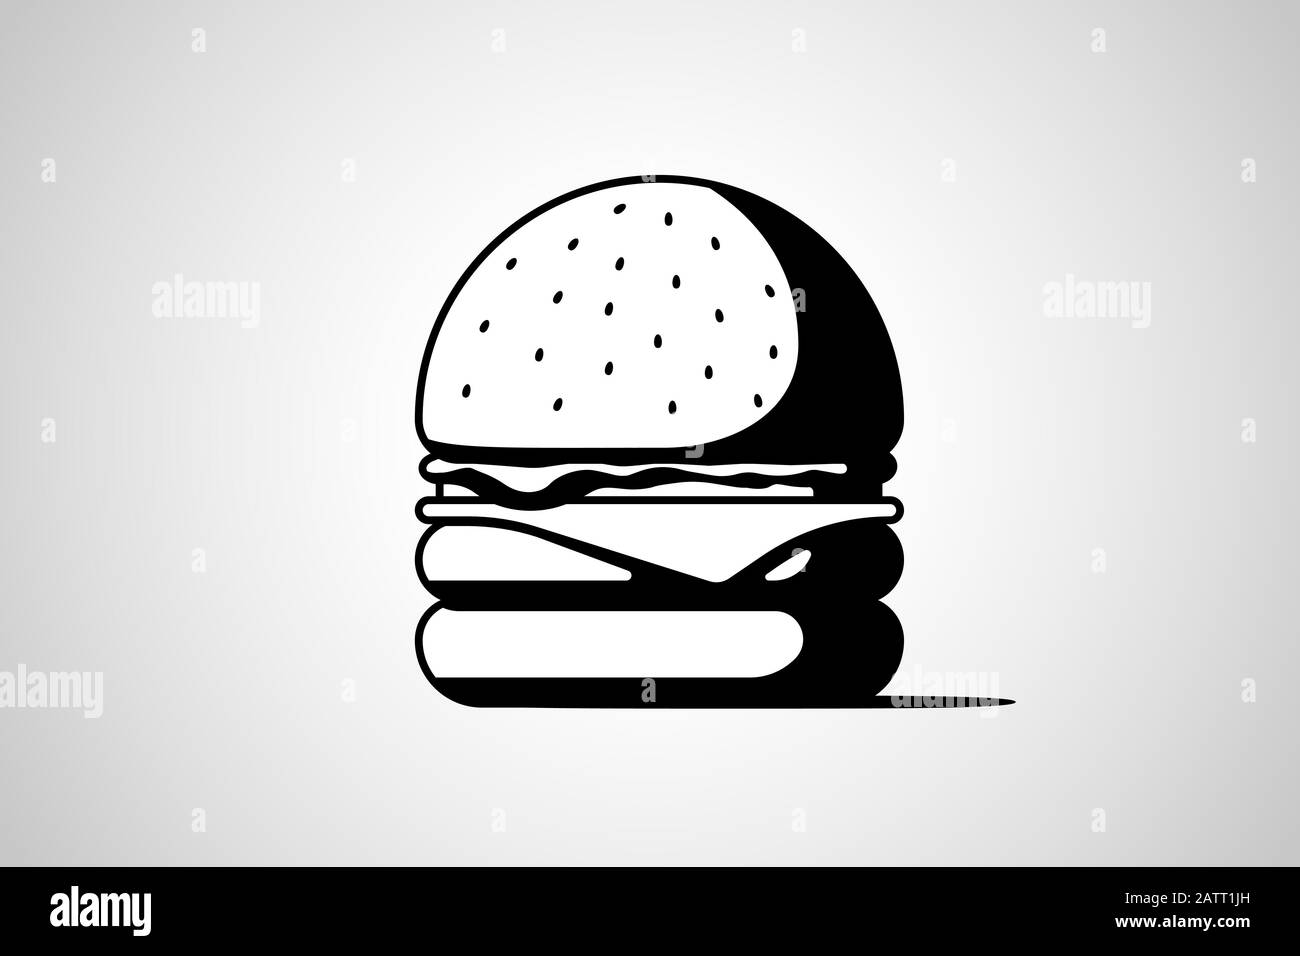 Burger Fast Food isoliert schwarzes Symbol. Hamburger mit Tomatenbogen Grüns saftig gebratenes Rindfleisch Schnitzel Käse Scheibe in Brötchen mit Sauce. Cheeseburger Fastfood Symbol Vektorgrafik Stock Vektor